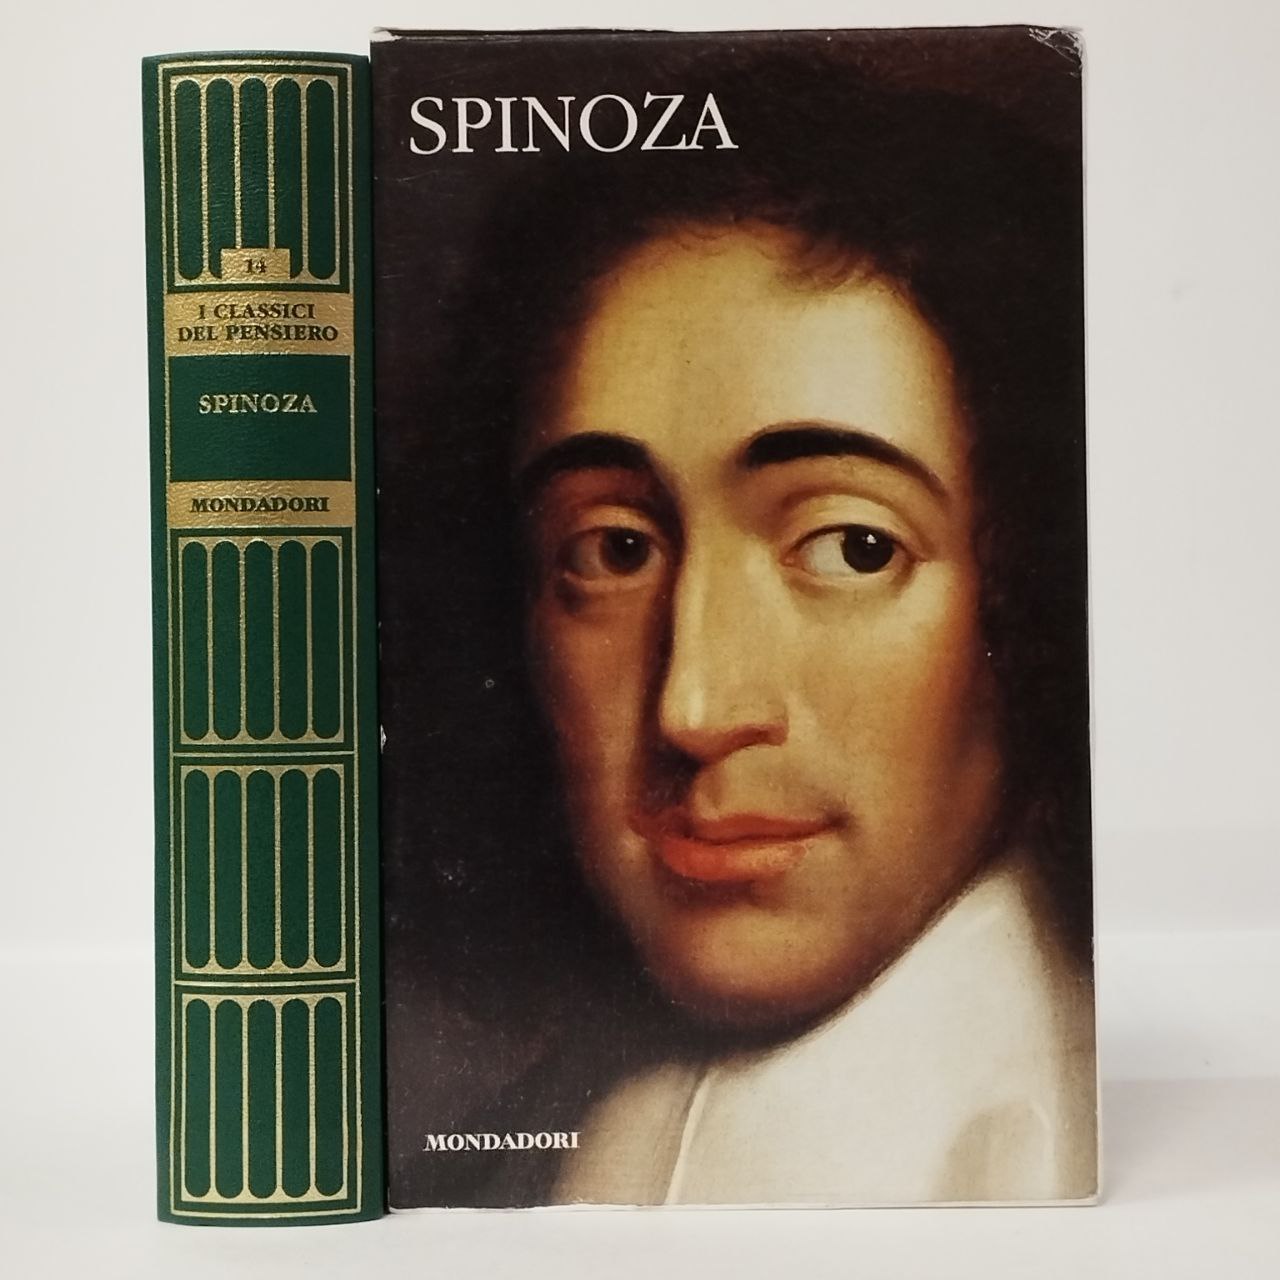 Trattato teologico-politico. Etica. Spinoza. Mondadori, 2008